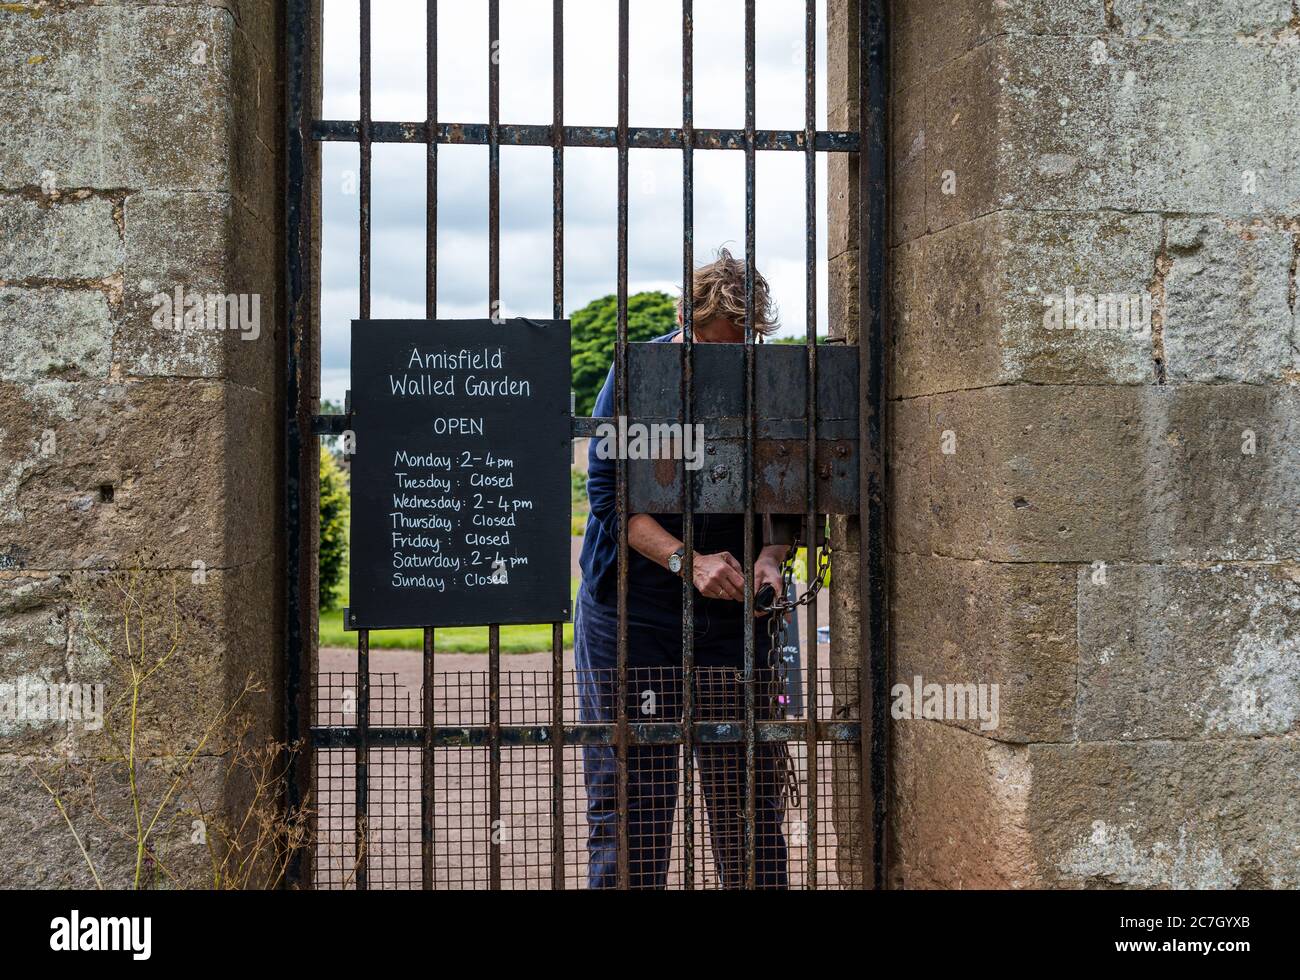 Freiwillige Entriegelung Eingangstor mit Öffnungszeiten, Amisfield Walled Garden, Haddington, East Lothian, Schottland, Großbritannien Stockfoto